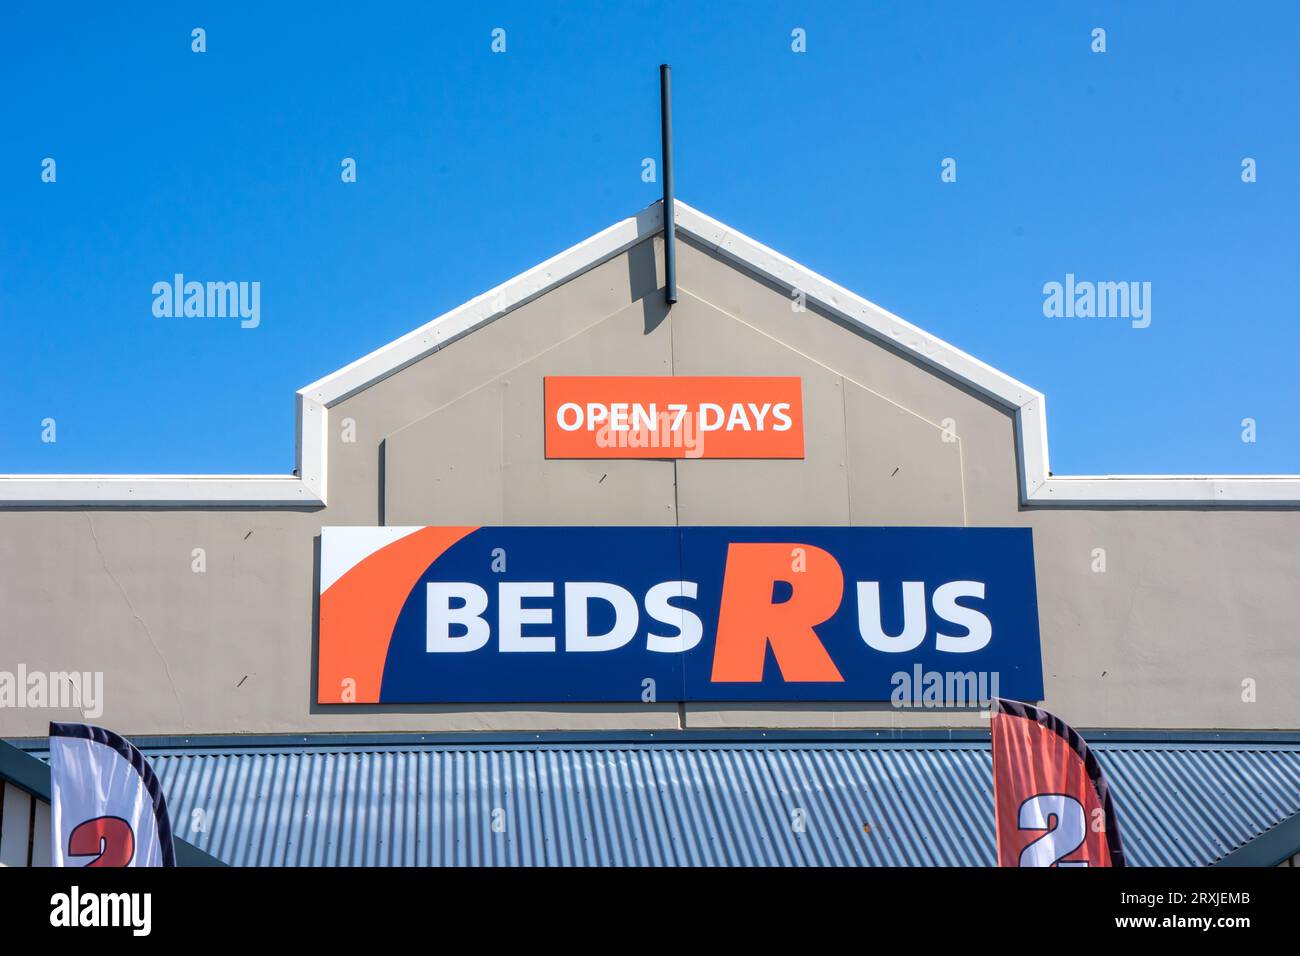 Befds R US signe sur la façade de la boutique, Tamworth Australie. Banque D'Images